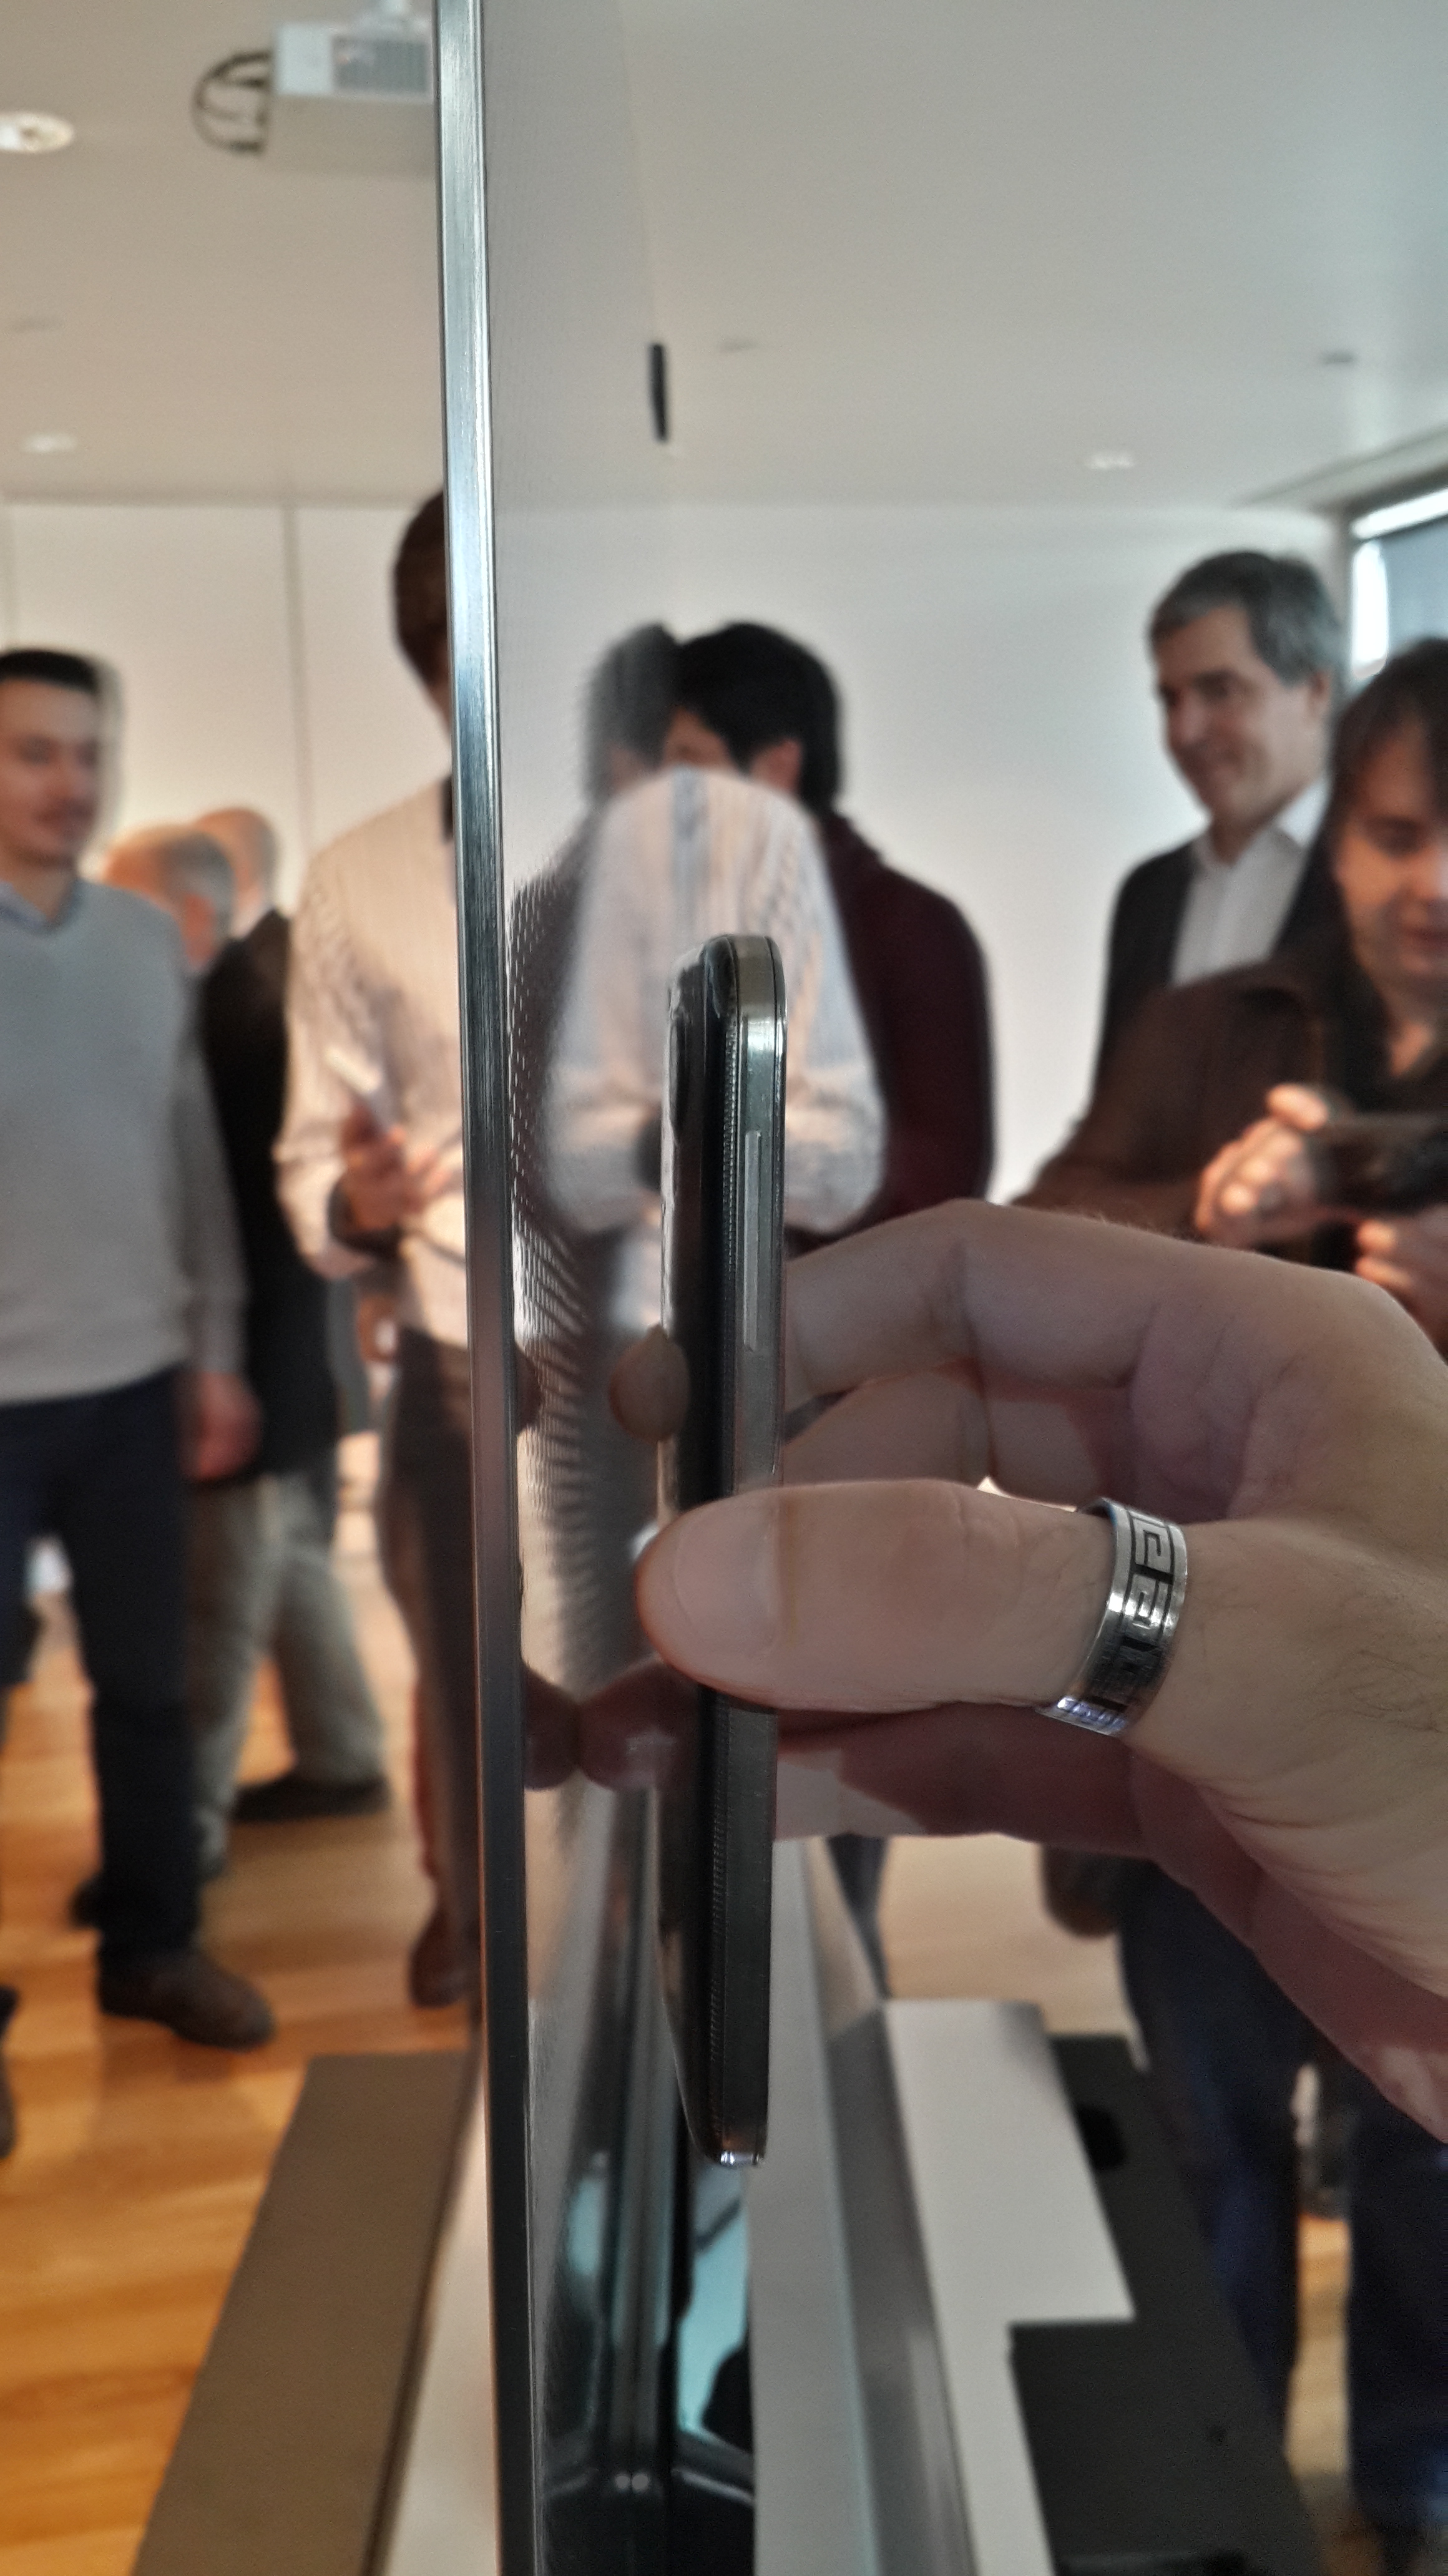 Comparación de un TV OLED de LG y un Samsung Galaxy S4. Gentileza del soporte del teléfono: Ignacio Pan.